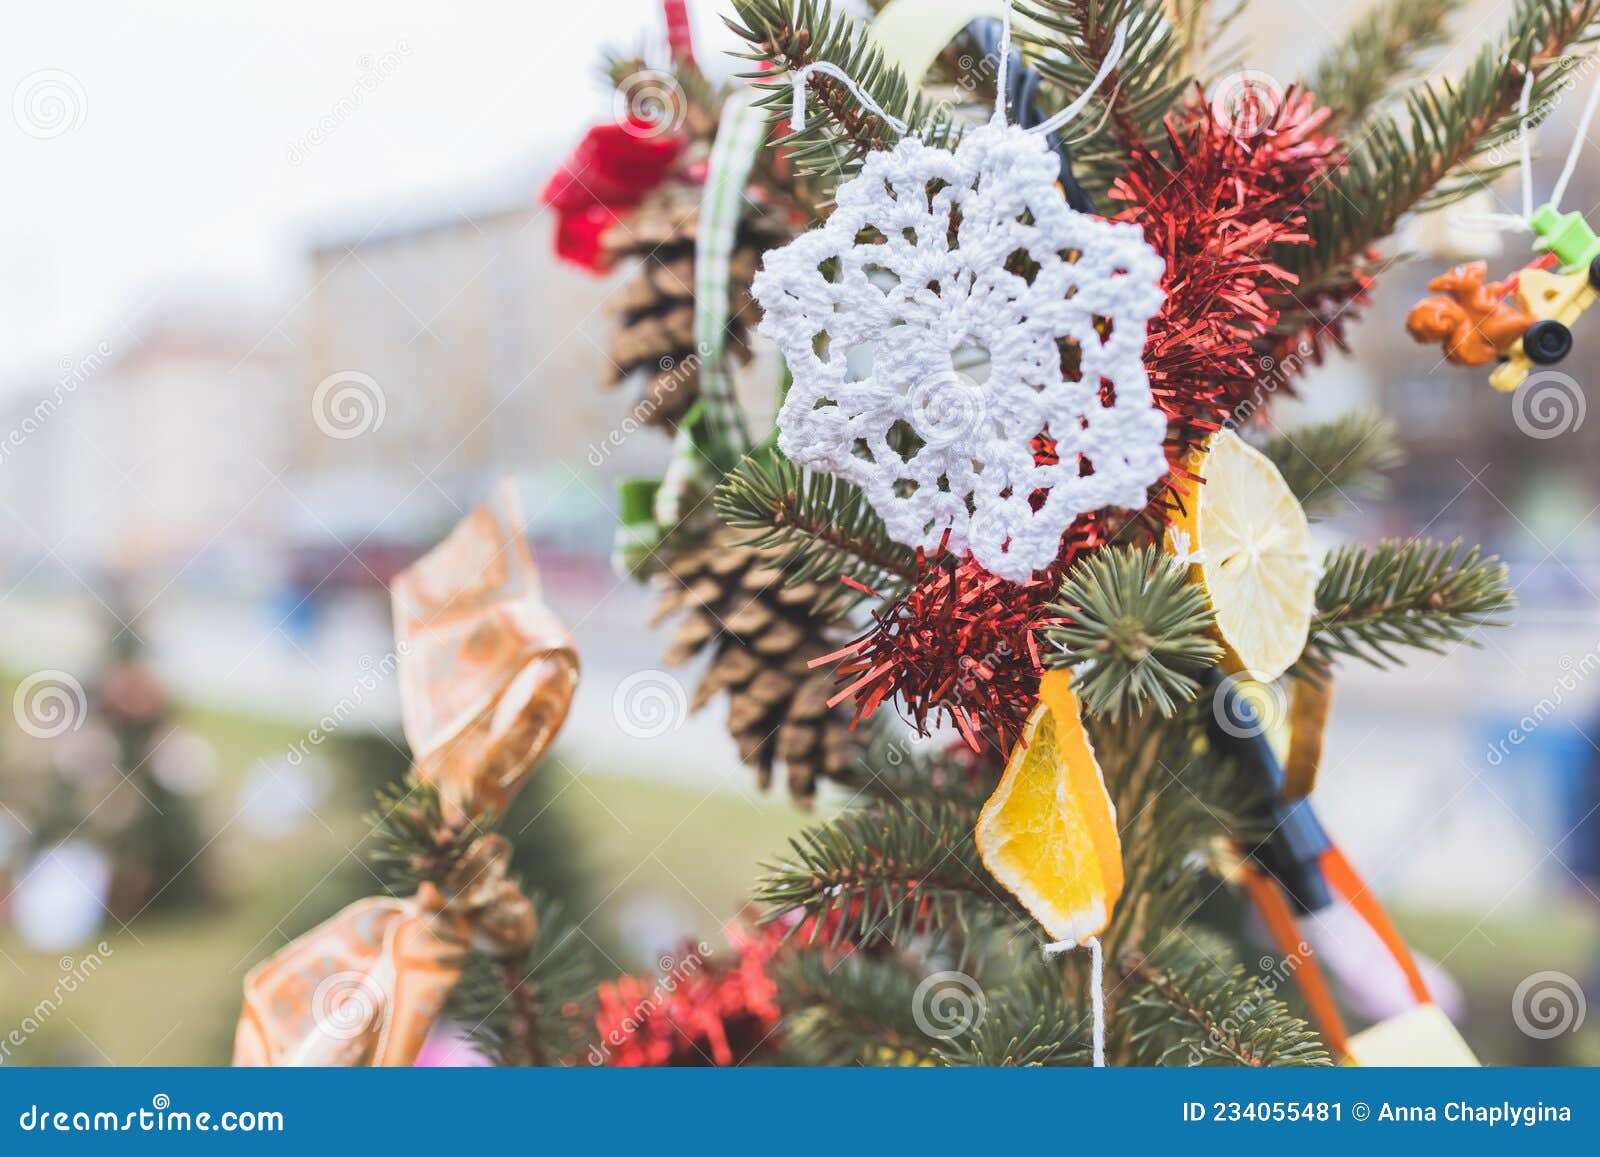 Decoração De Crochê Feita à Mão Na árvore De Natal Imagem de Stock - Imagem  de brinquedo, têxtil: 234055481